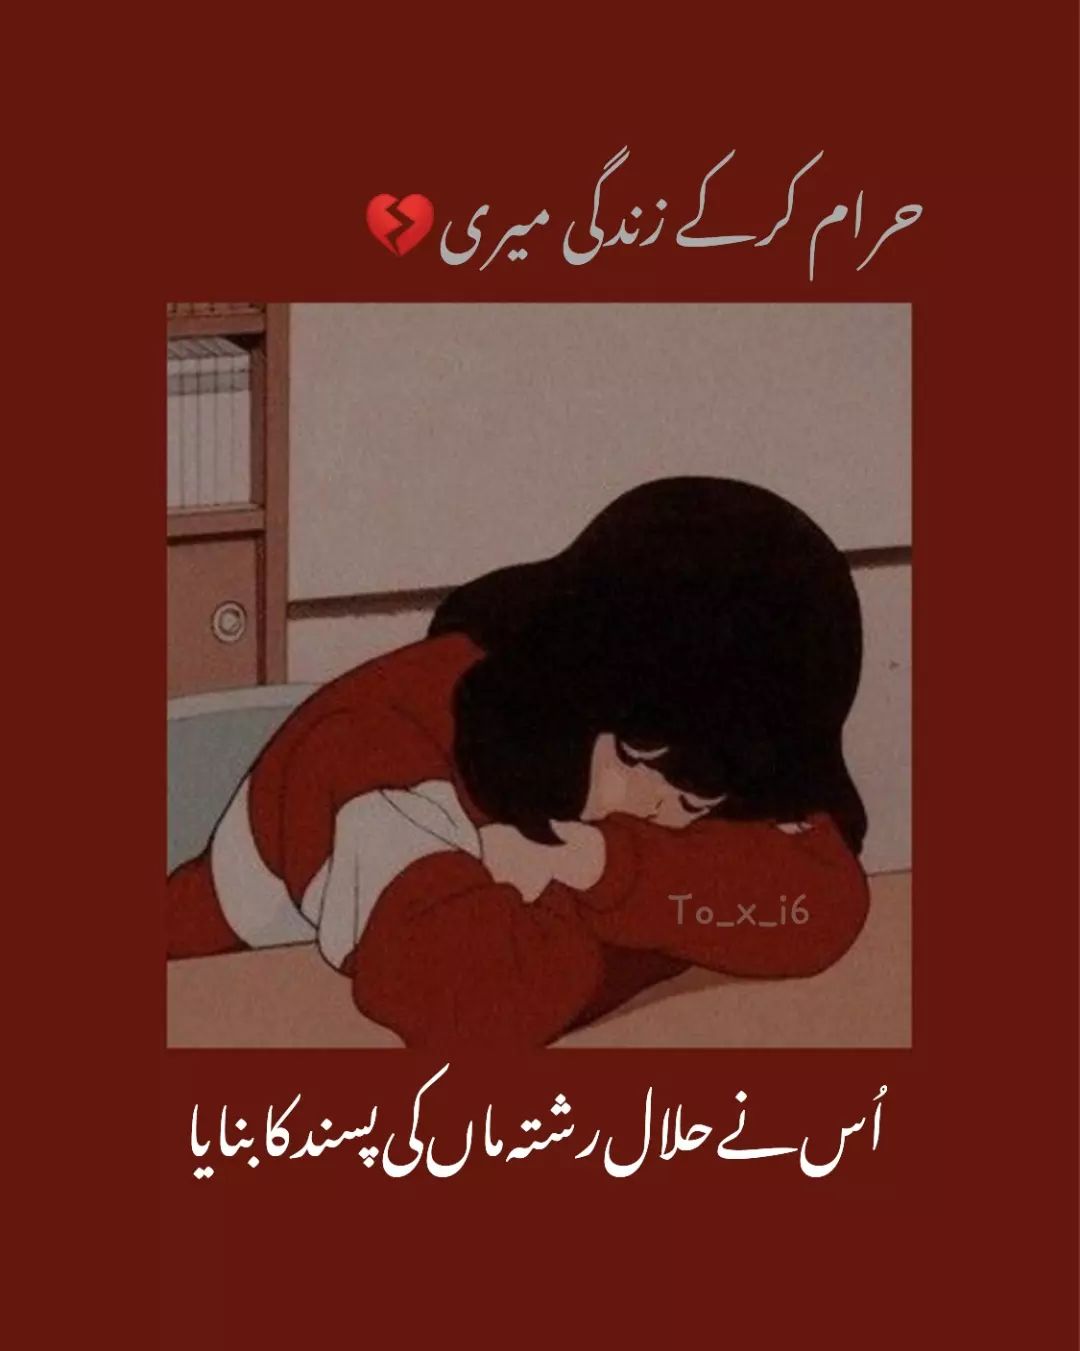 50 + Sad Urdu Poetry DP Status for WhatsApp FB Instagram